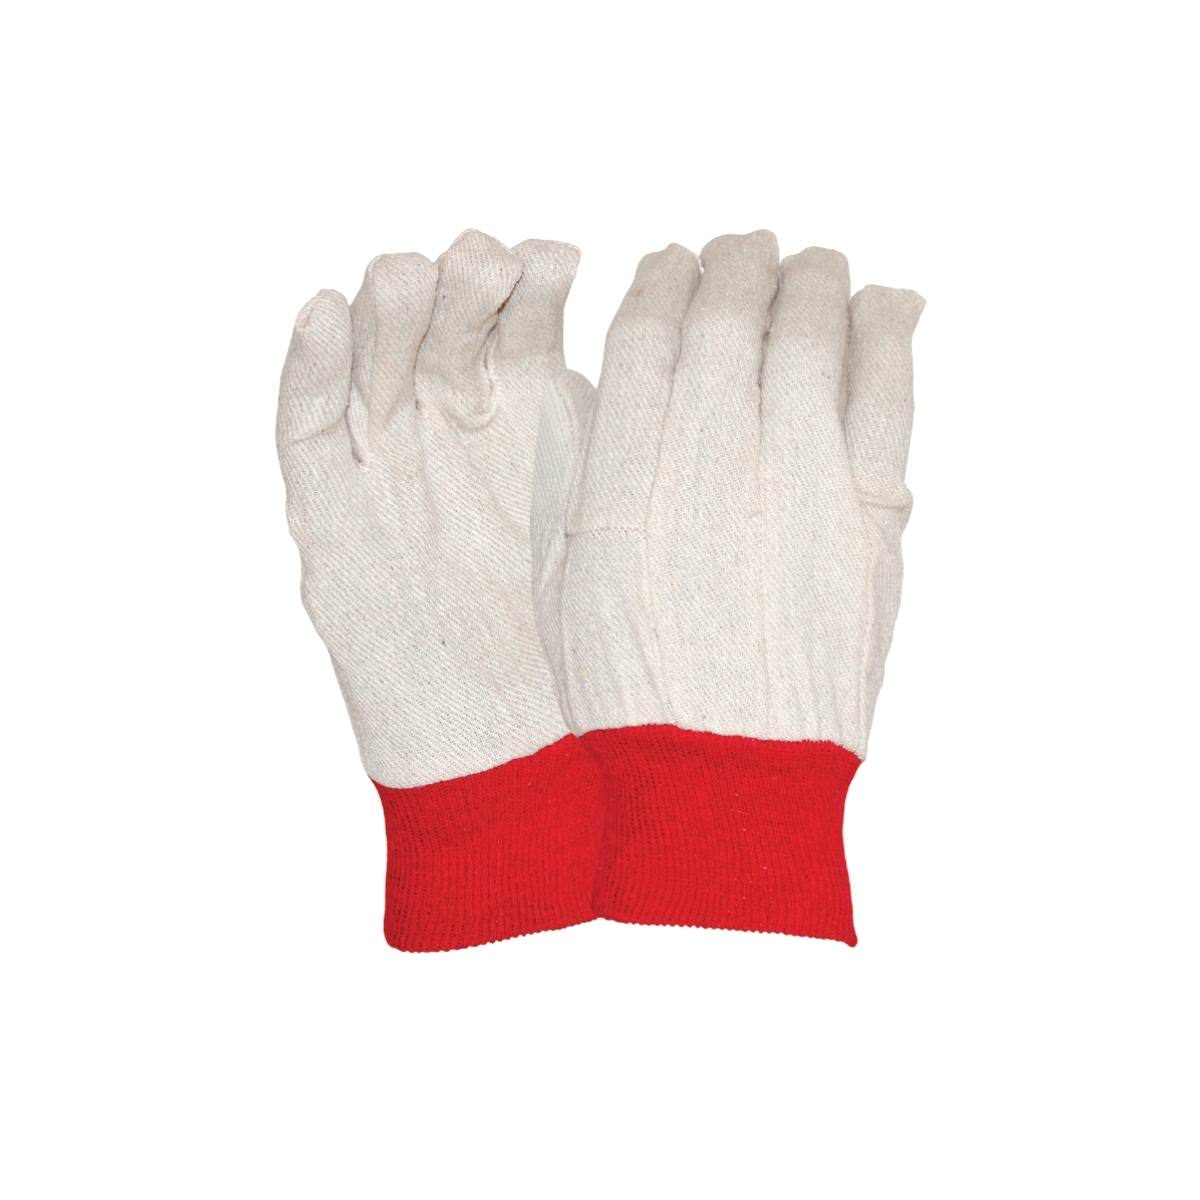 SafeRite® Ladies Red Cuff Cotton Drill Glove SR747W (Pack of 12)